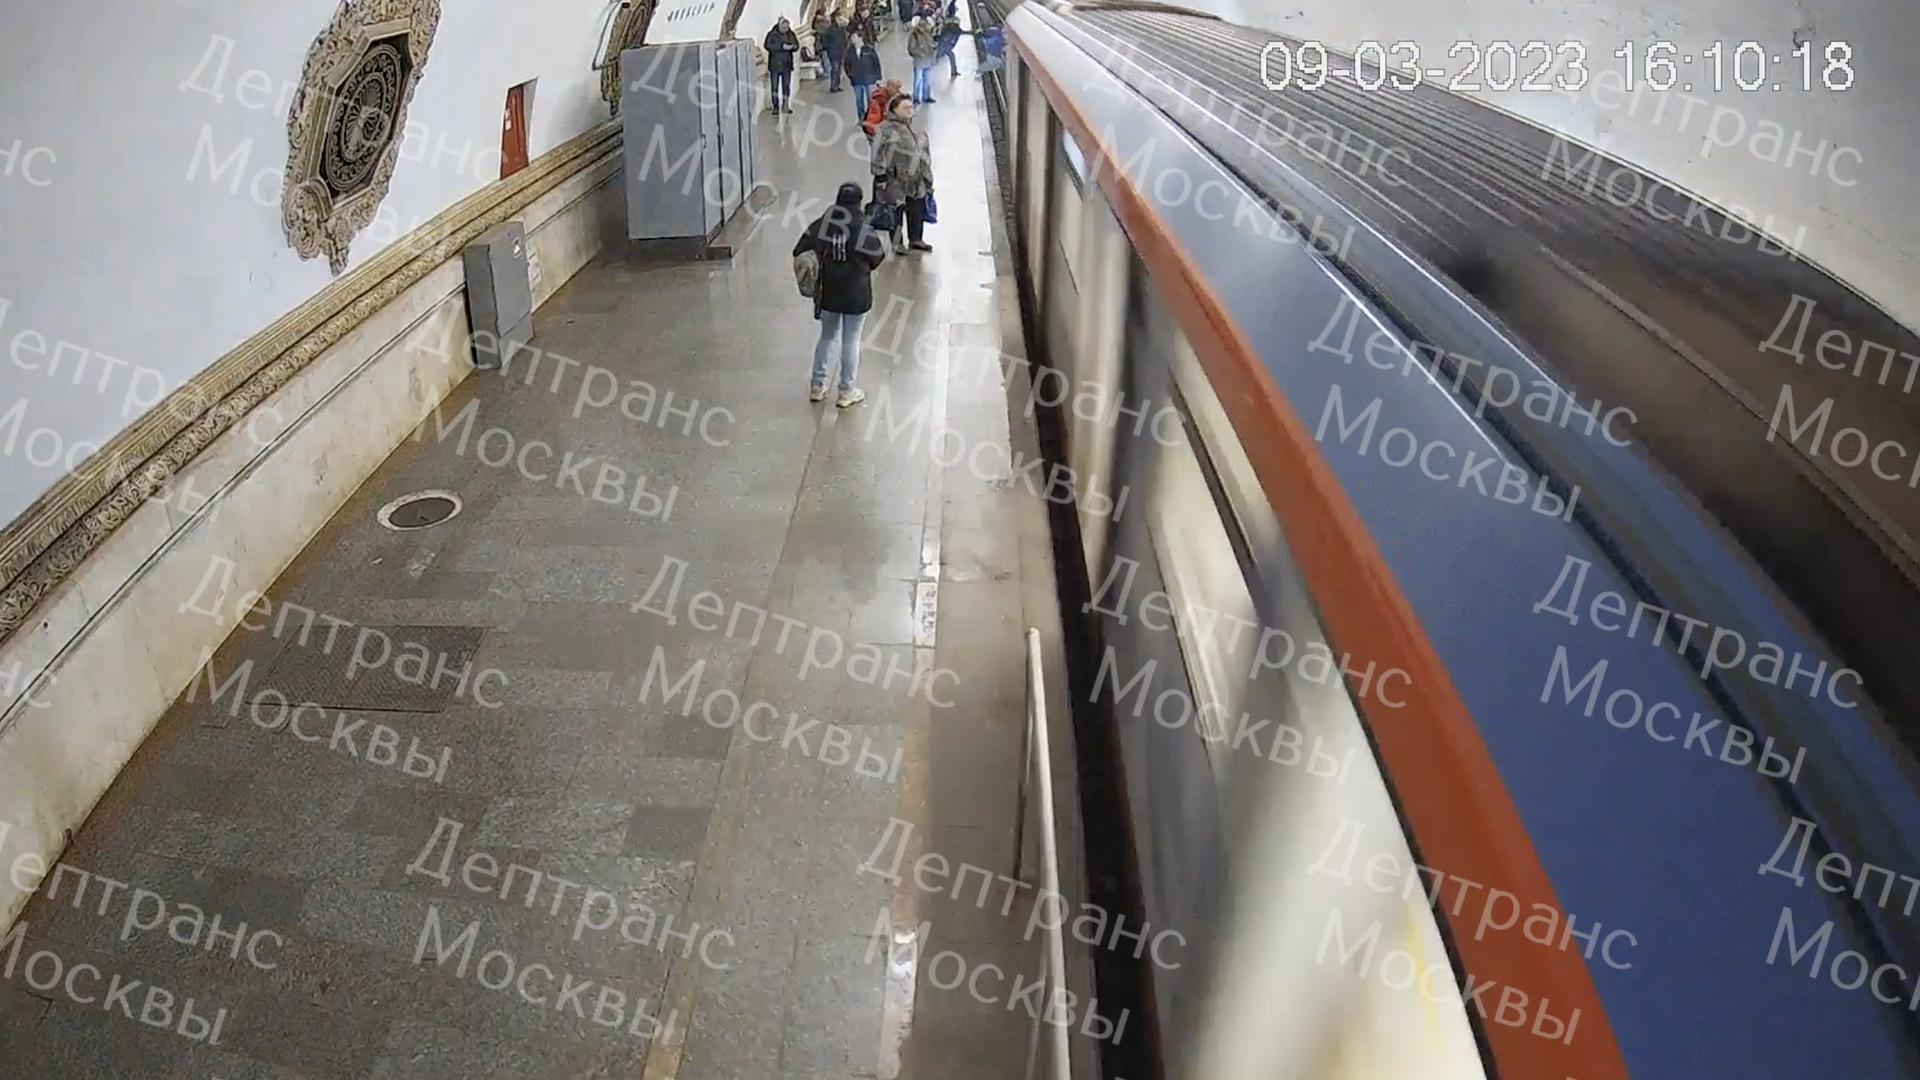 Пассажир метро в Москве, которого столкнули на рельсы, оказался подростком  - РИА Новости, 09.03.2023